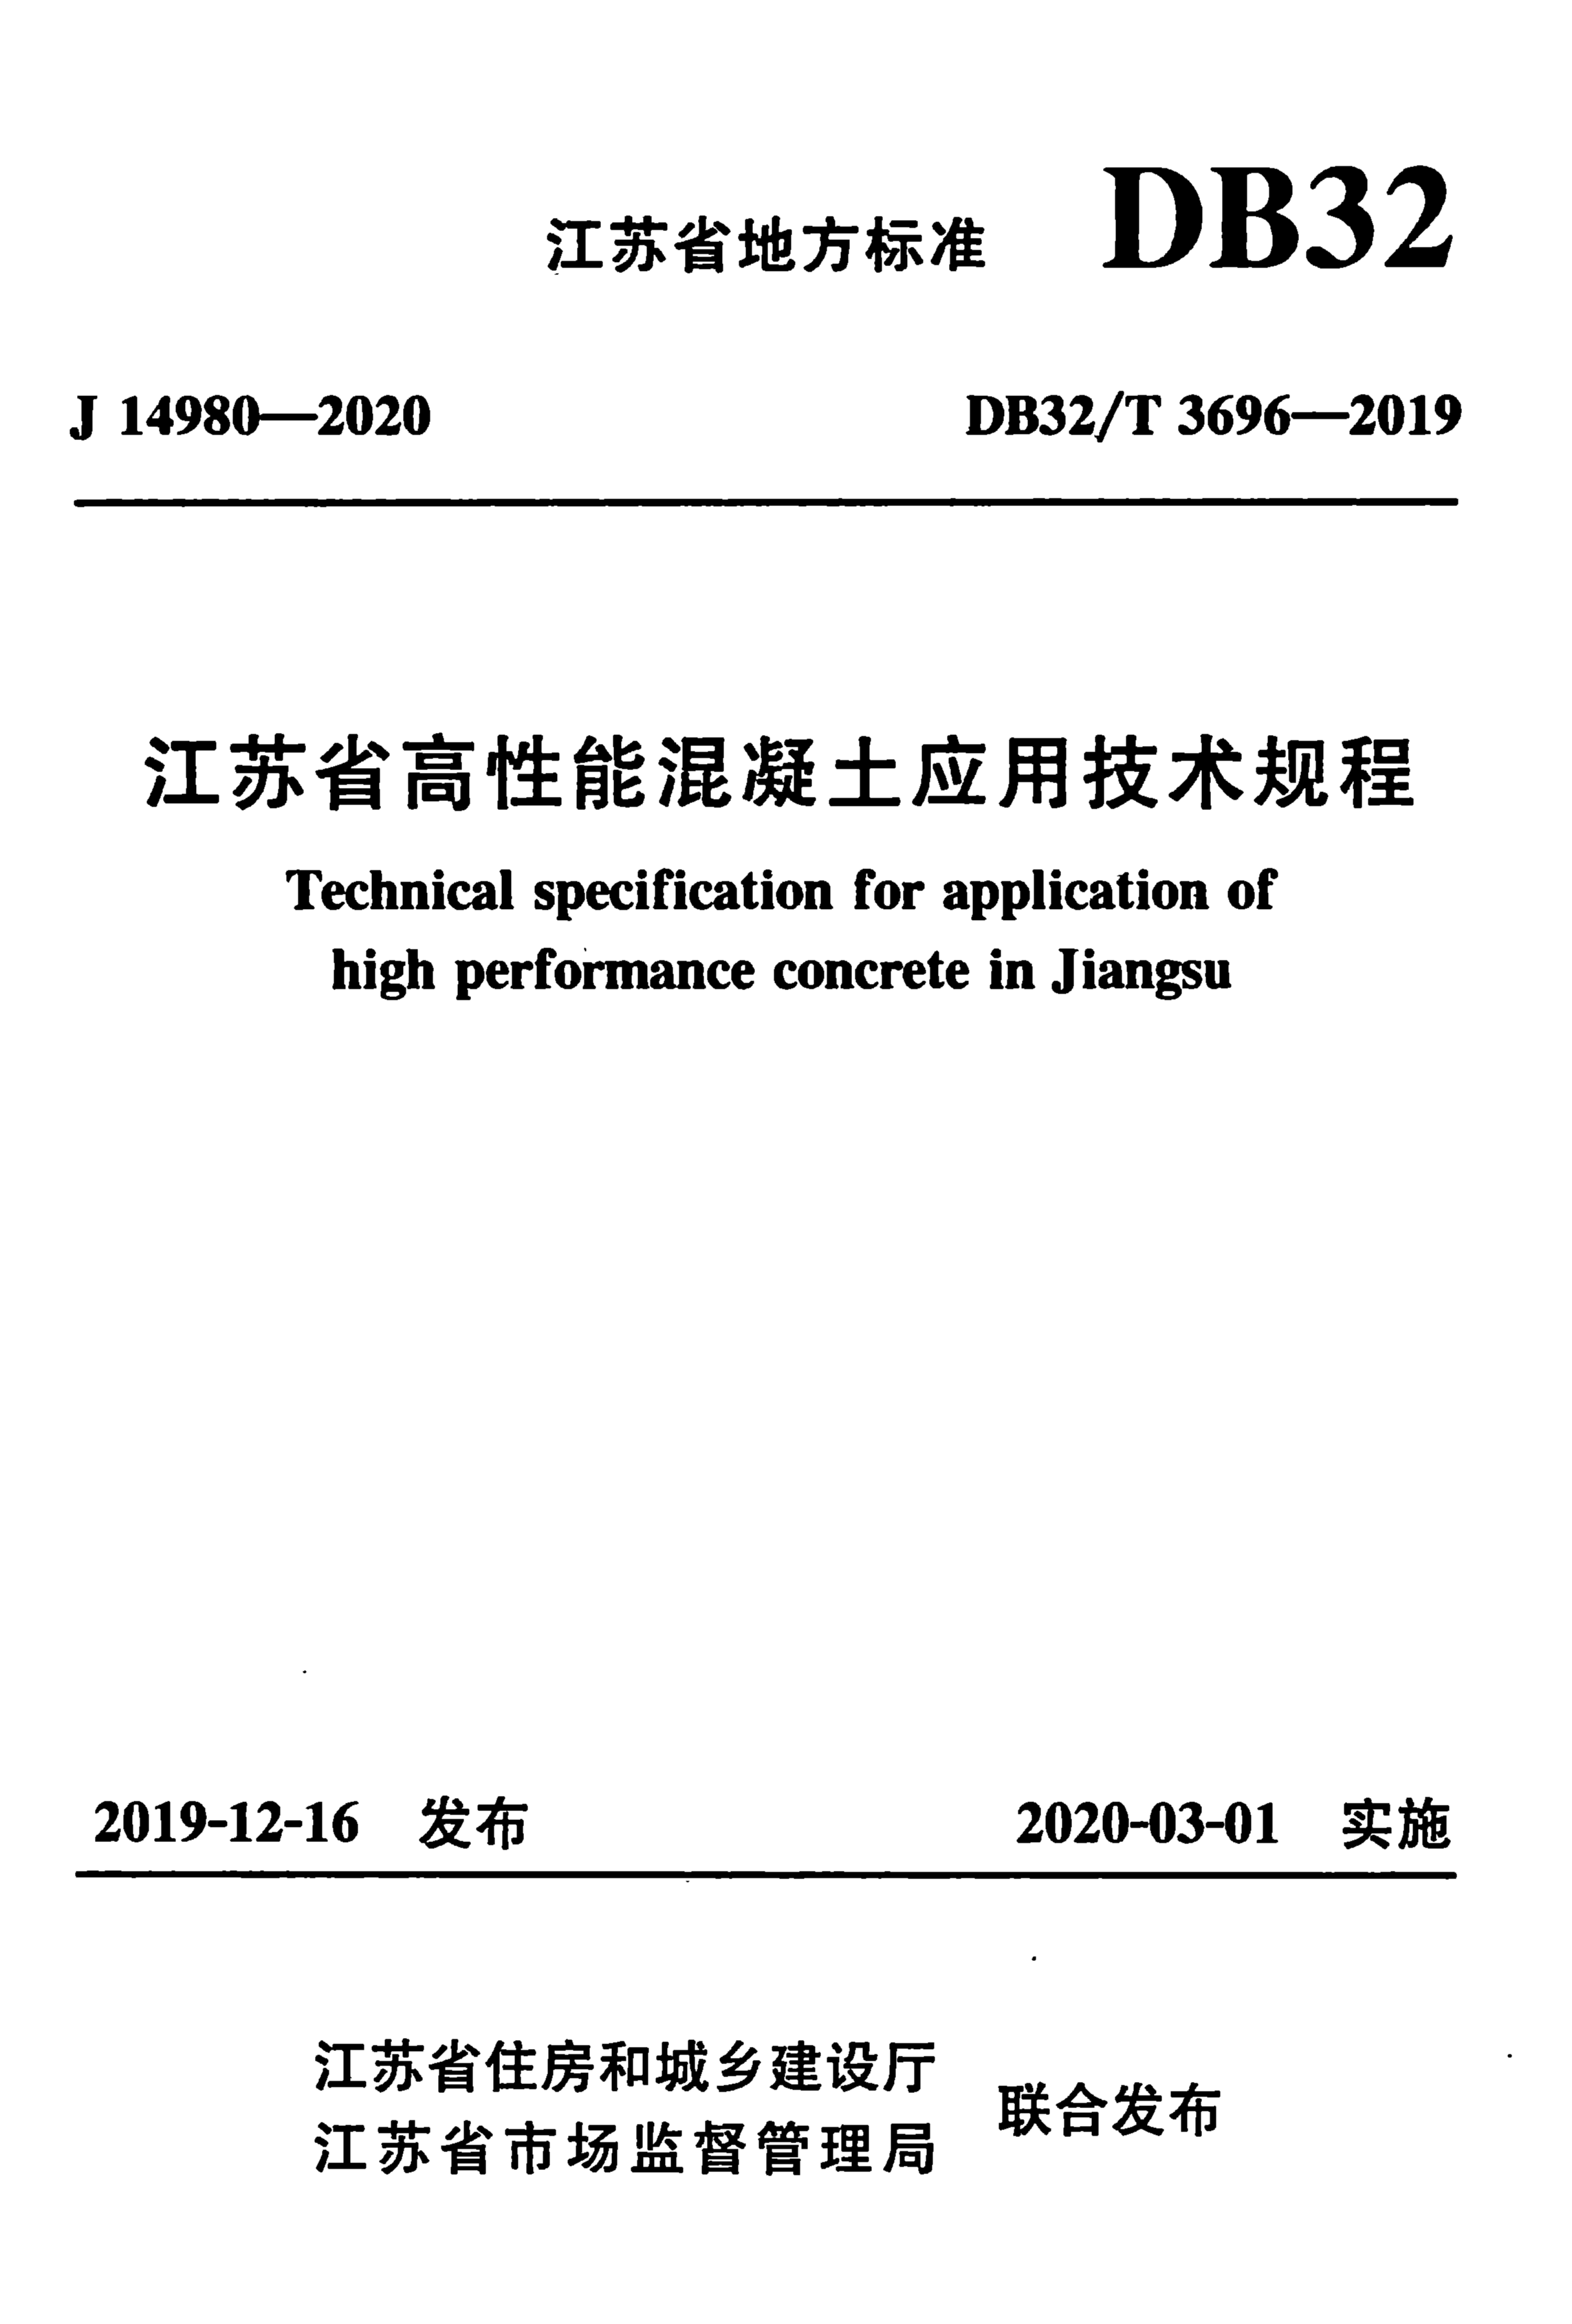 DB32/T 3696-2019 江苏省高性能混凝土应用技术规程